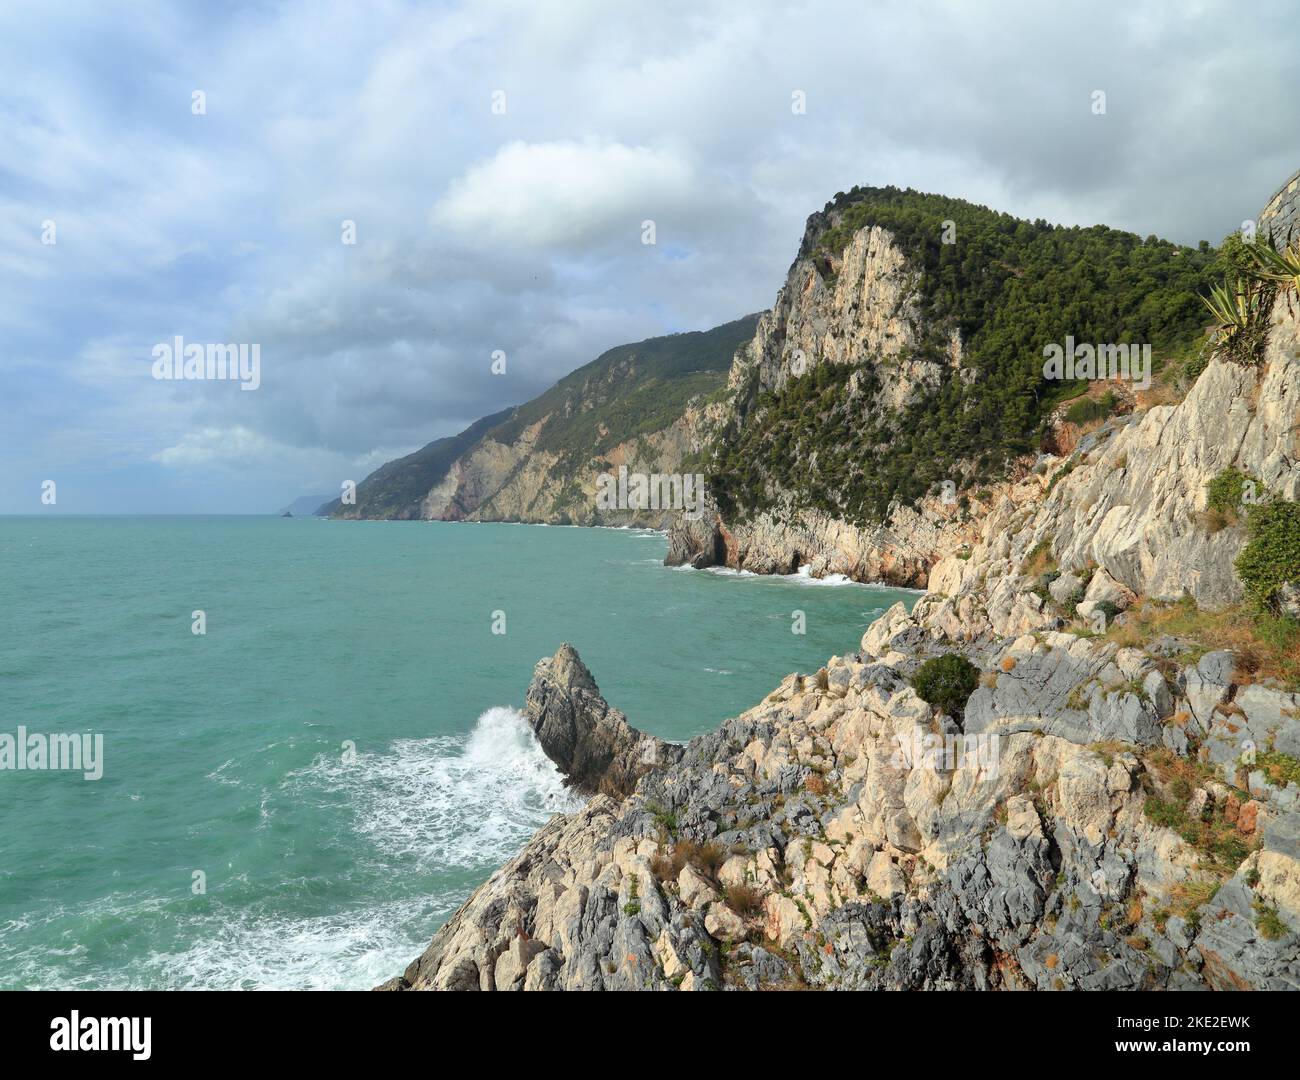 La costa rocosa de Porto Venere (Portovenere), Italia Foto de stock